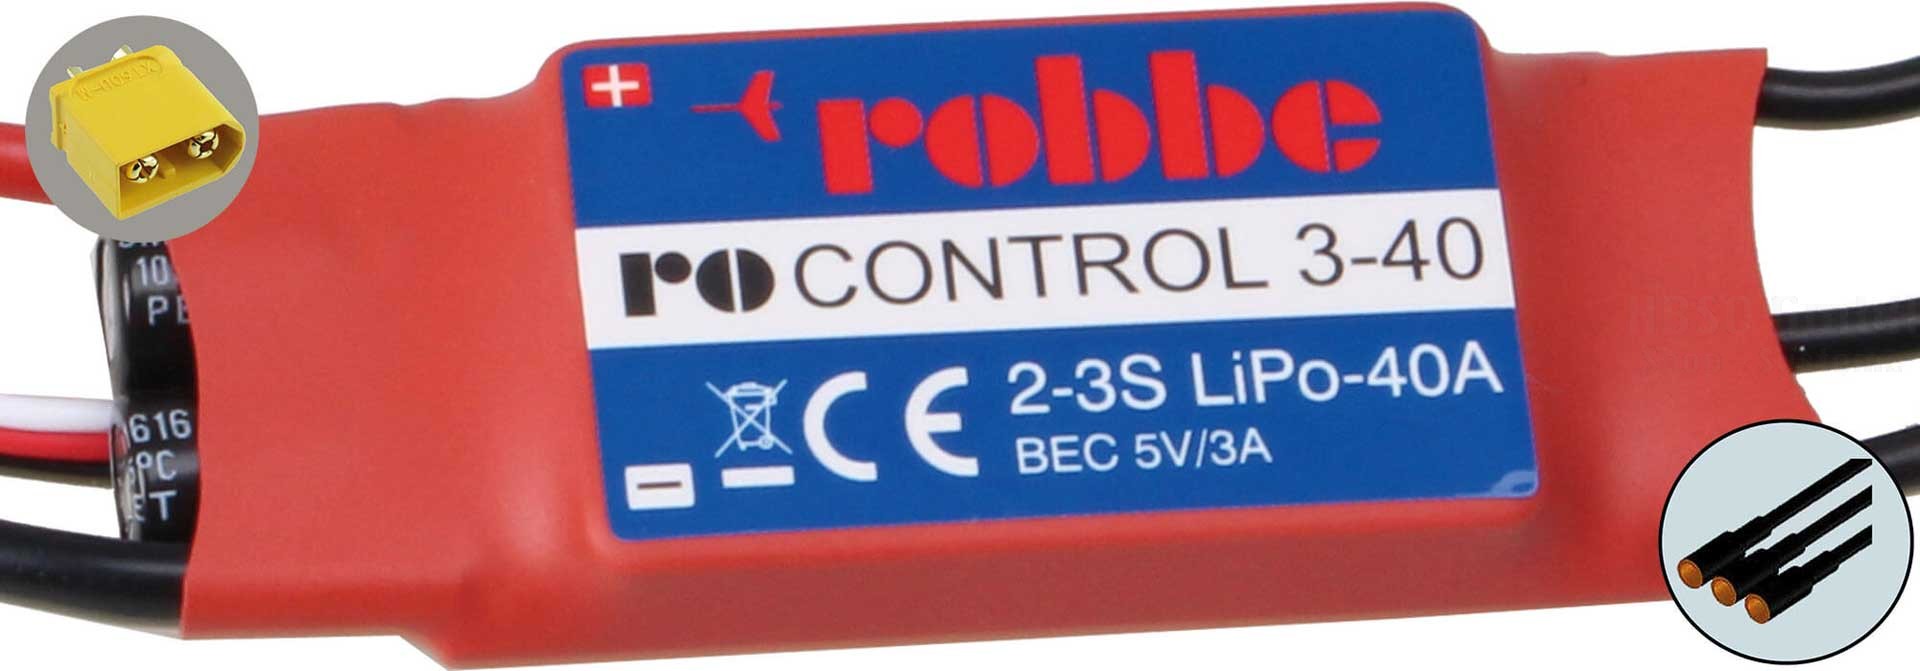 Robbe Modellsport RO-CONTROL 3-40 2-3S -40(55)A 5V/3A BEC Regler